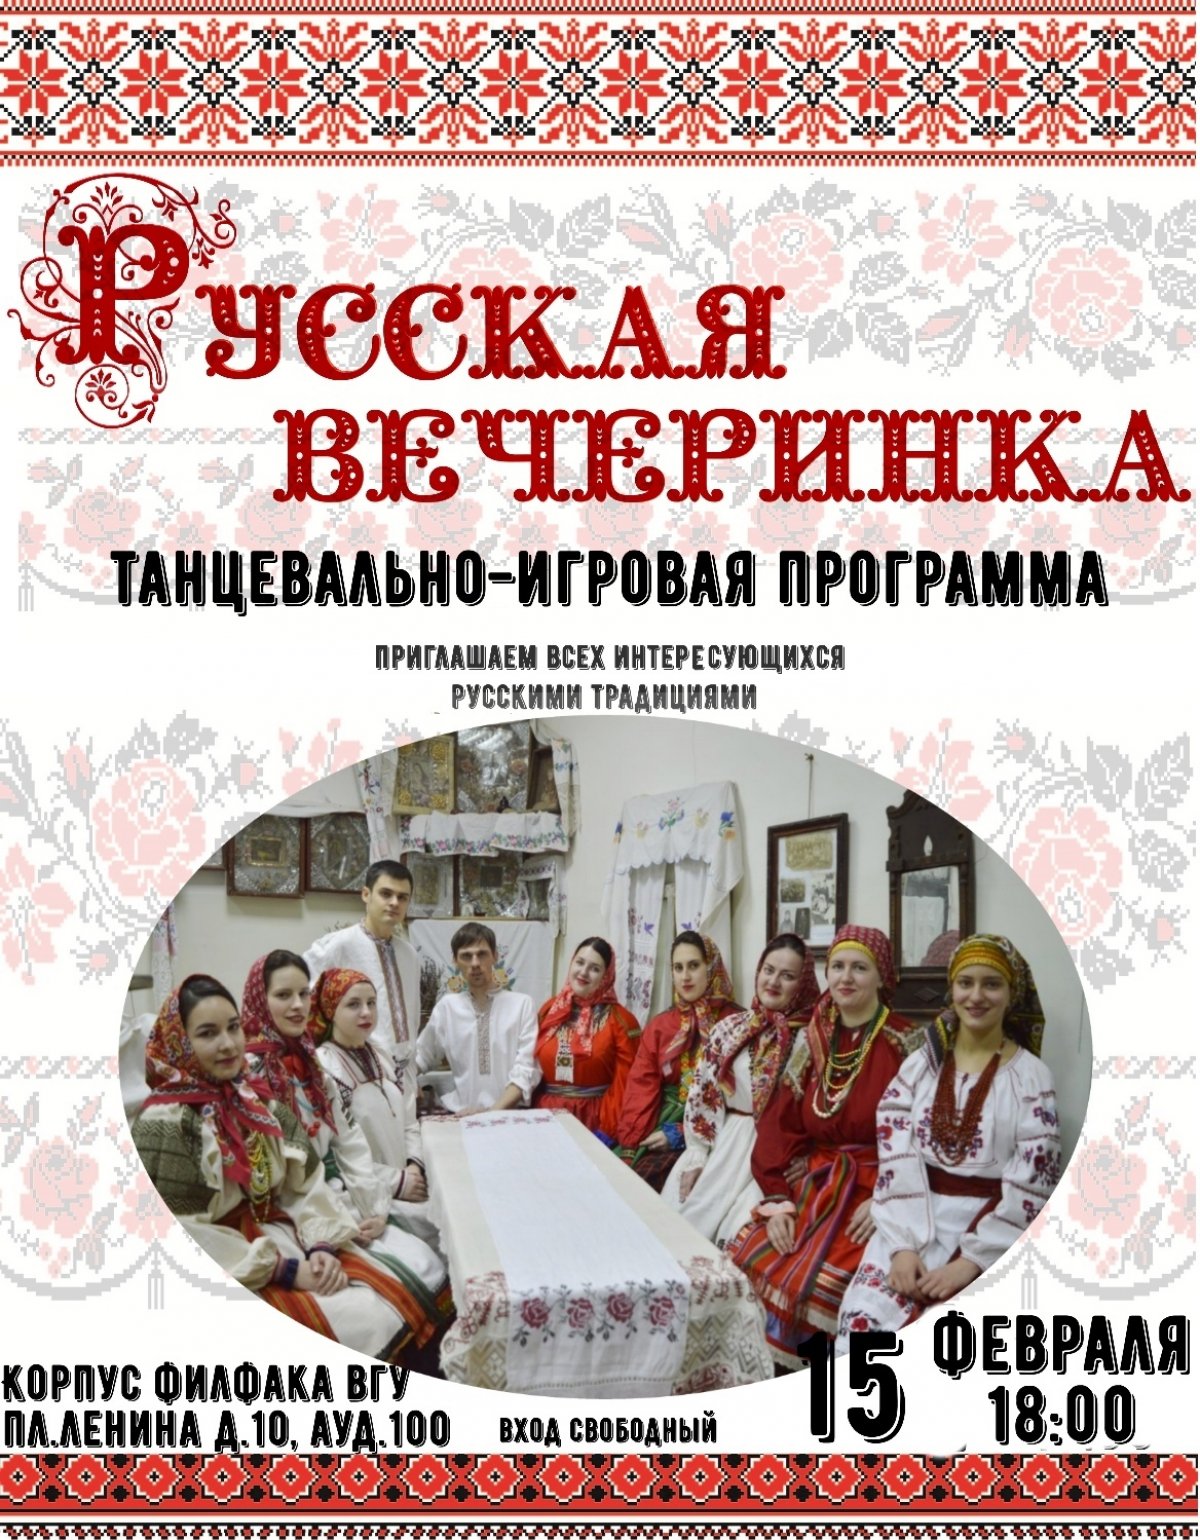 Ансамбль ВГУ "Терем" приглашает всех желающих на фольклорную вечёрку! Вас ждут традиционные русские танцы, молодёжные игры и хороводы!